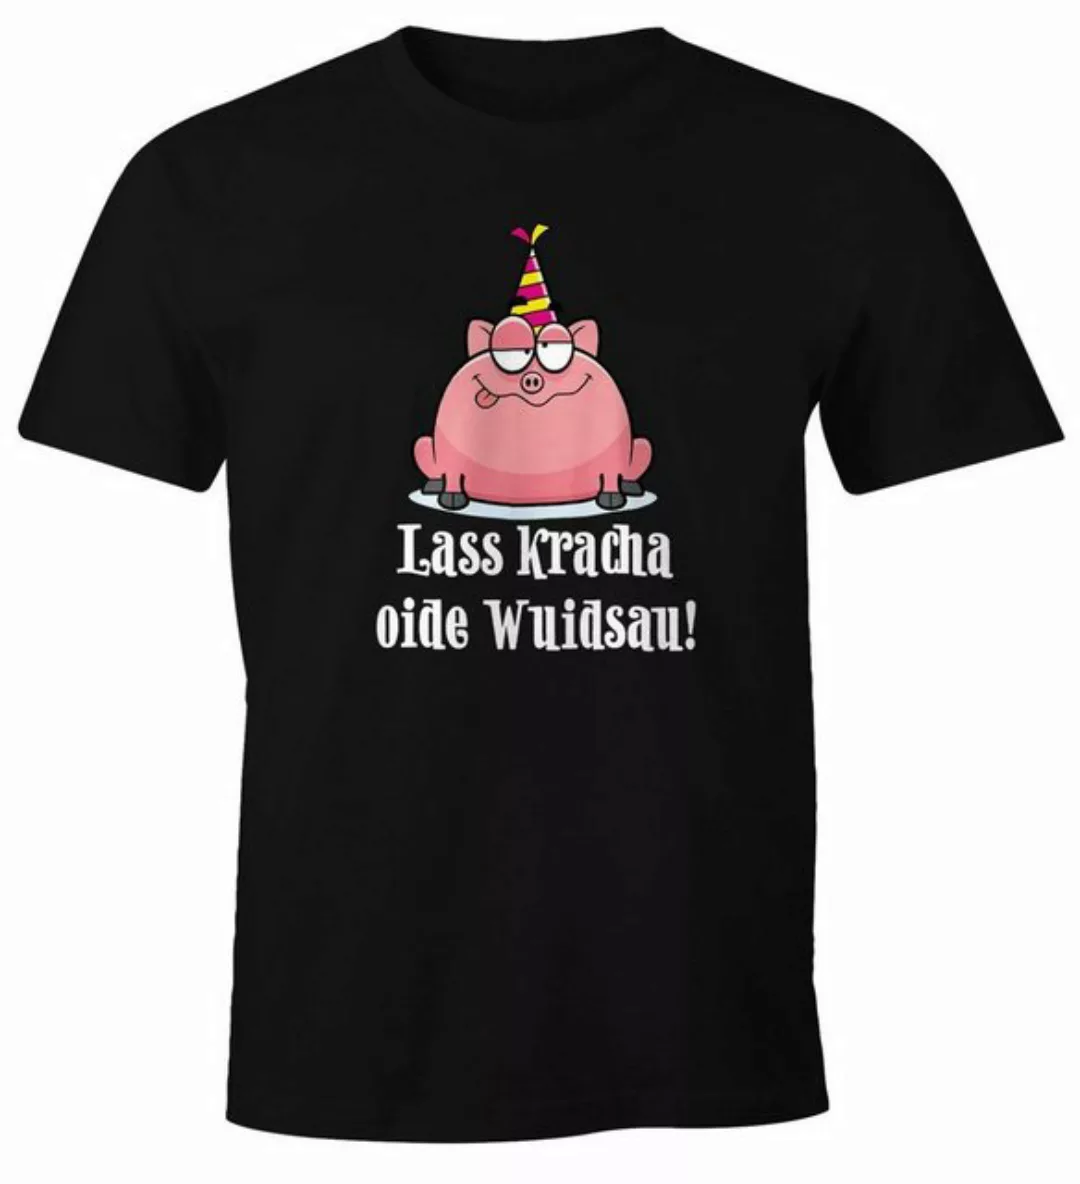 MoonWorks Print-Shirt Herren T-Shirt Geburtstag Schwein Spruch Lass kracha günstig online kaufen